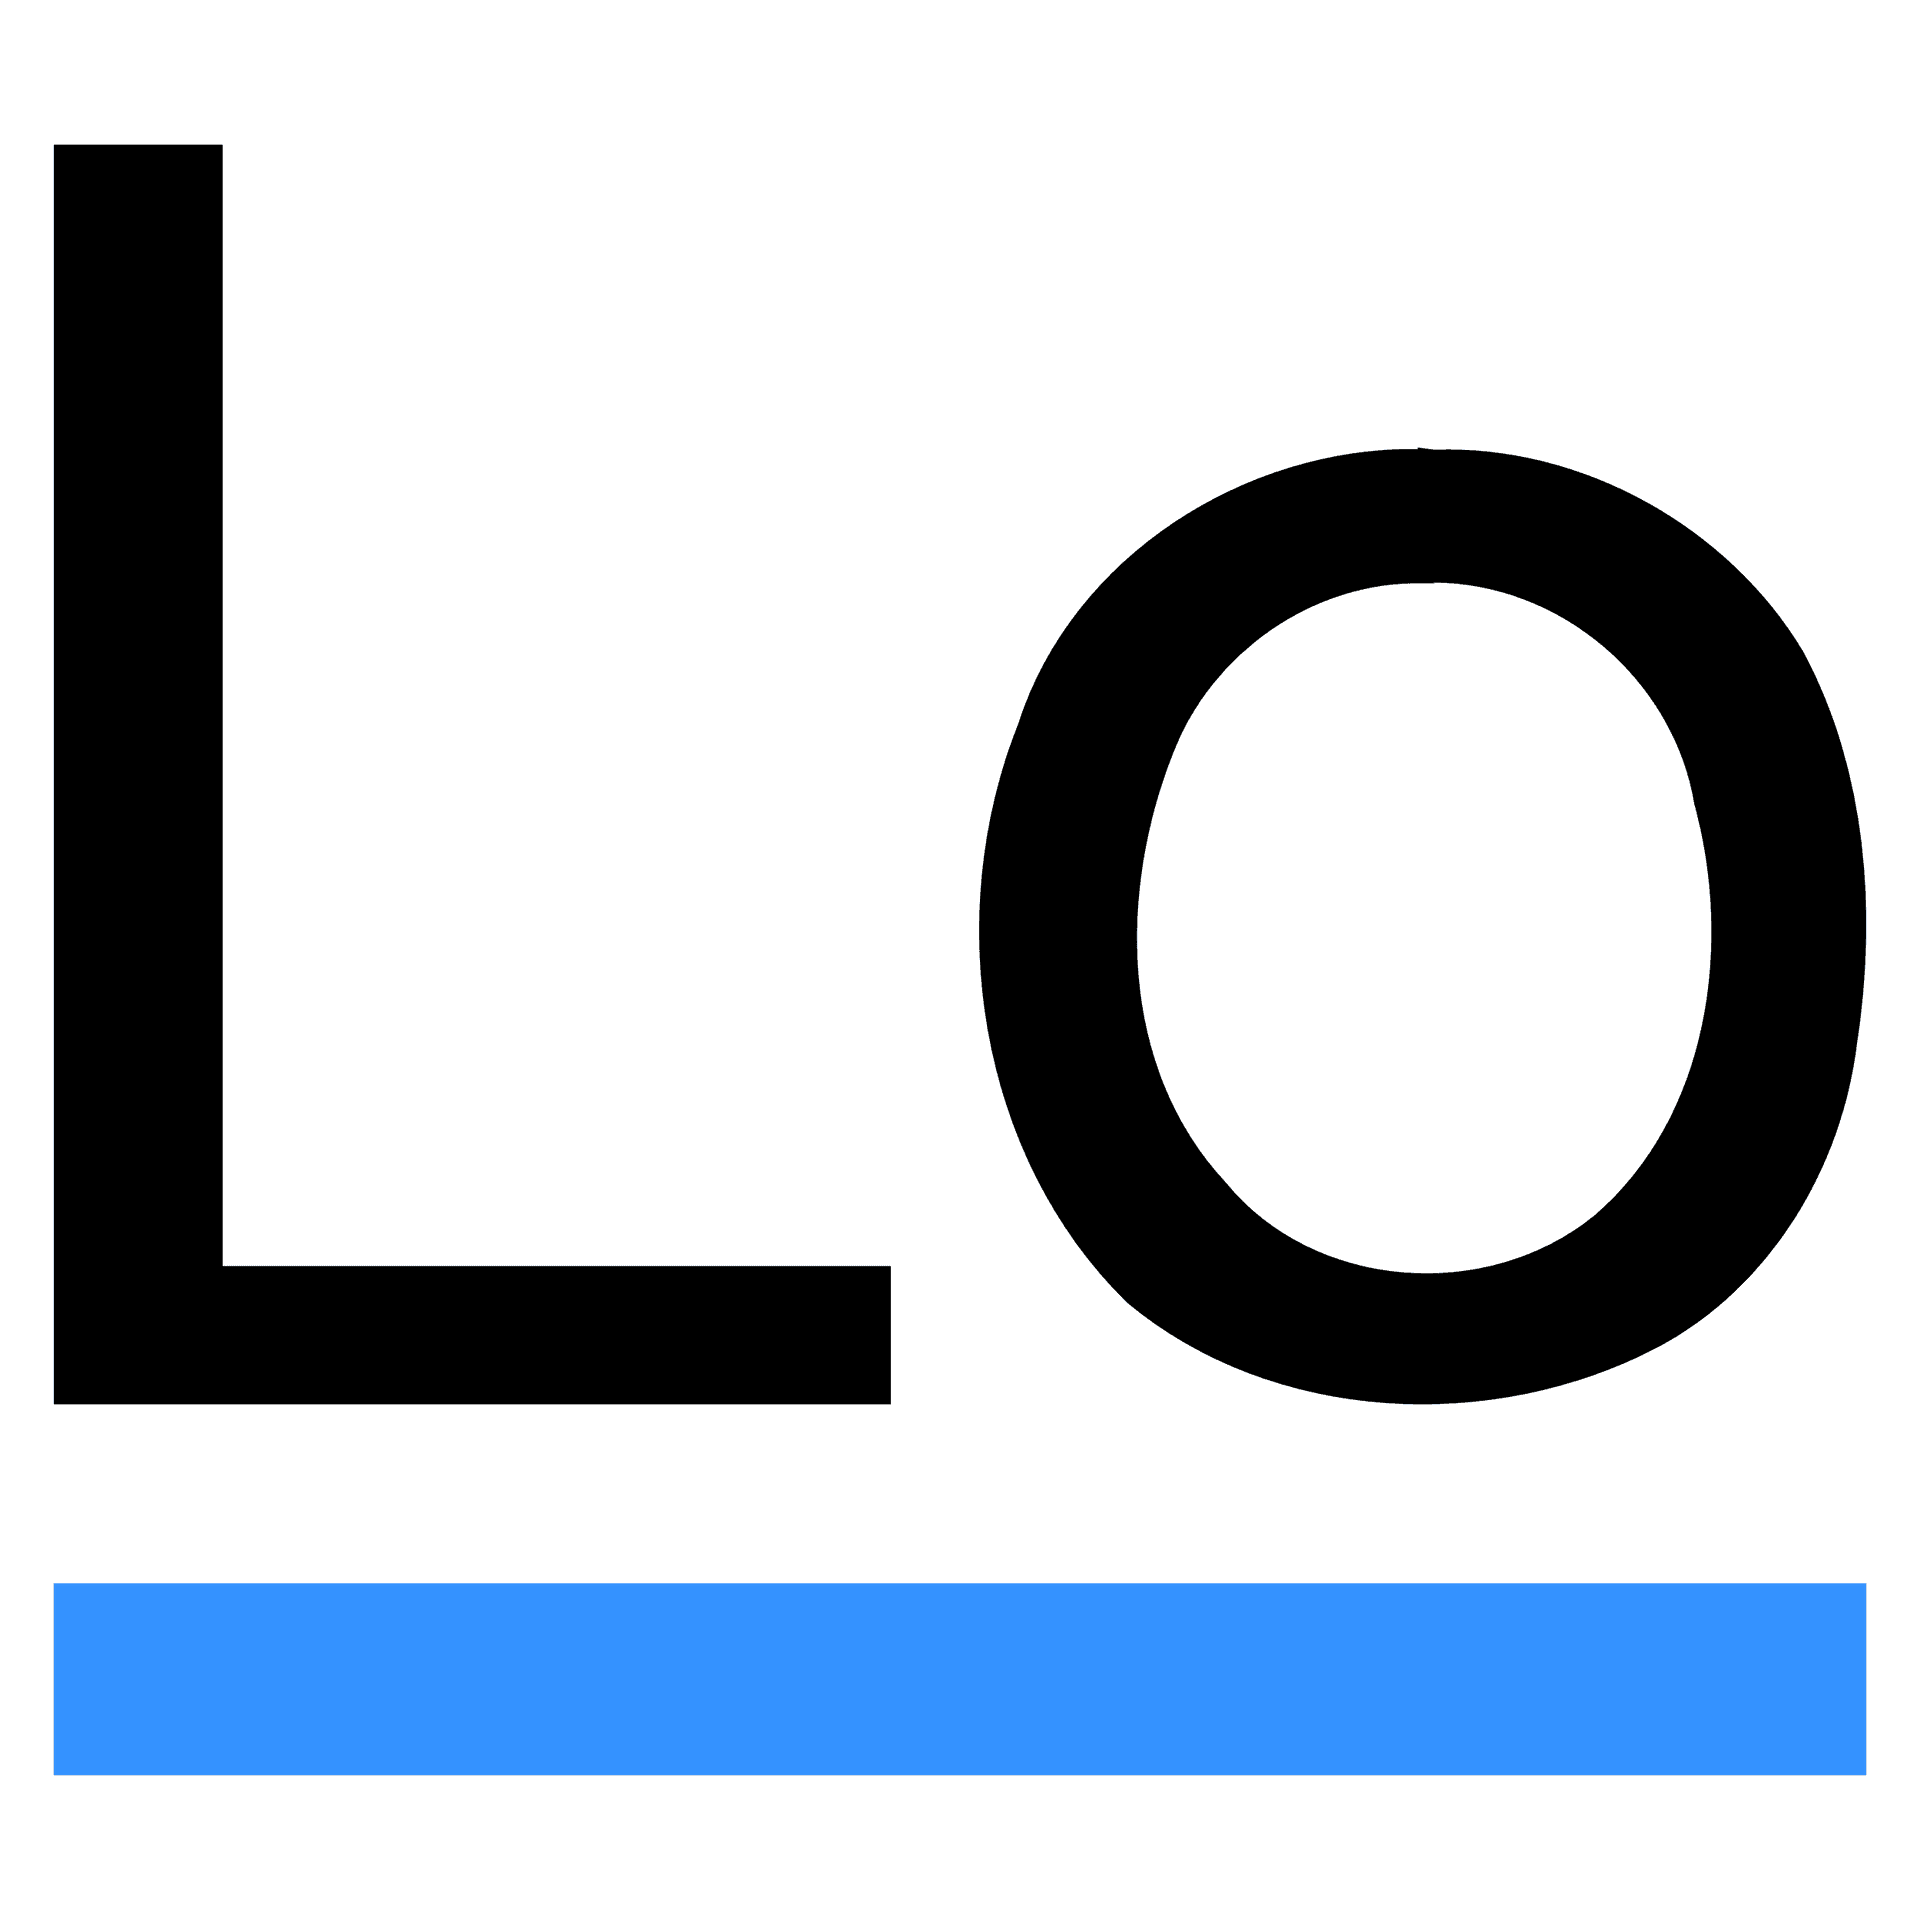 Logo Lodash - Biblioteka narzędziowa dla języka JavaScript, służąca do uproszczenia pracy z danymi i manipulacji nimi.